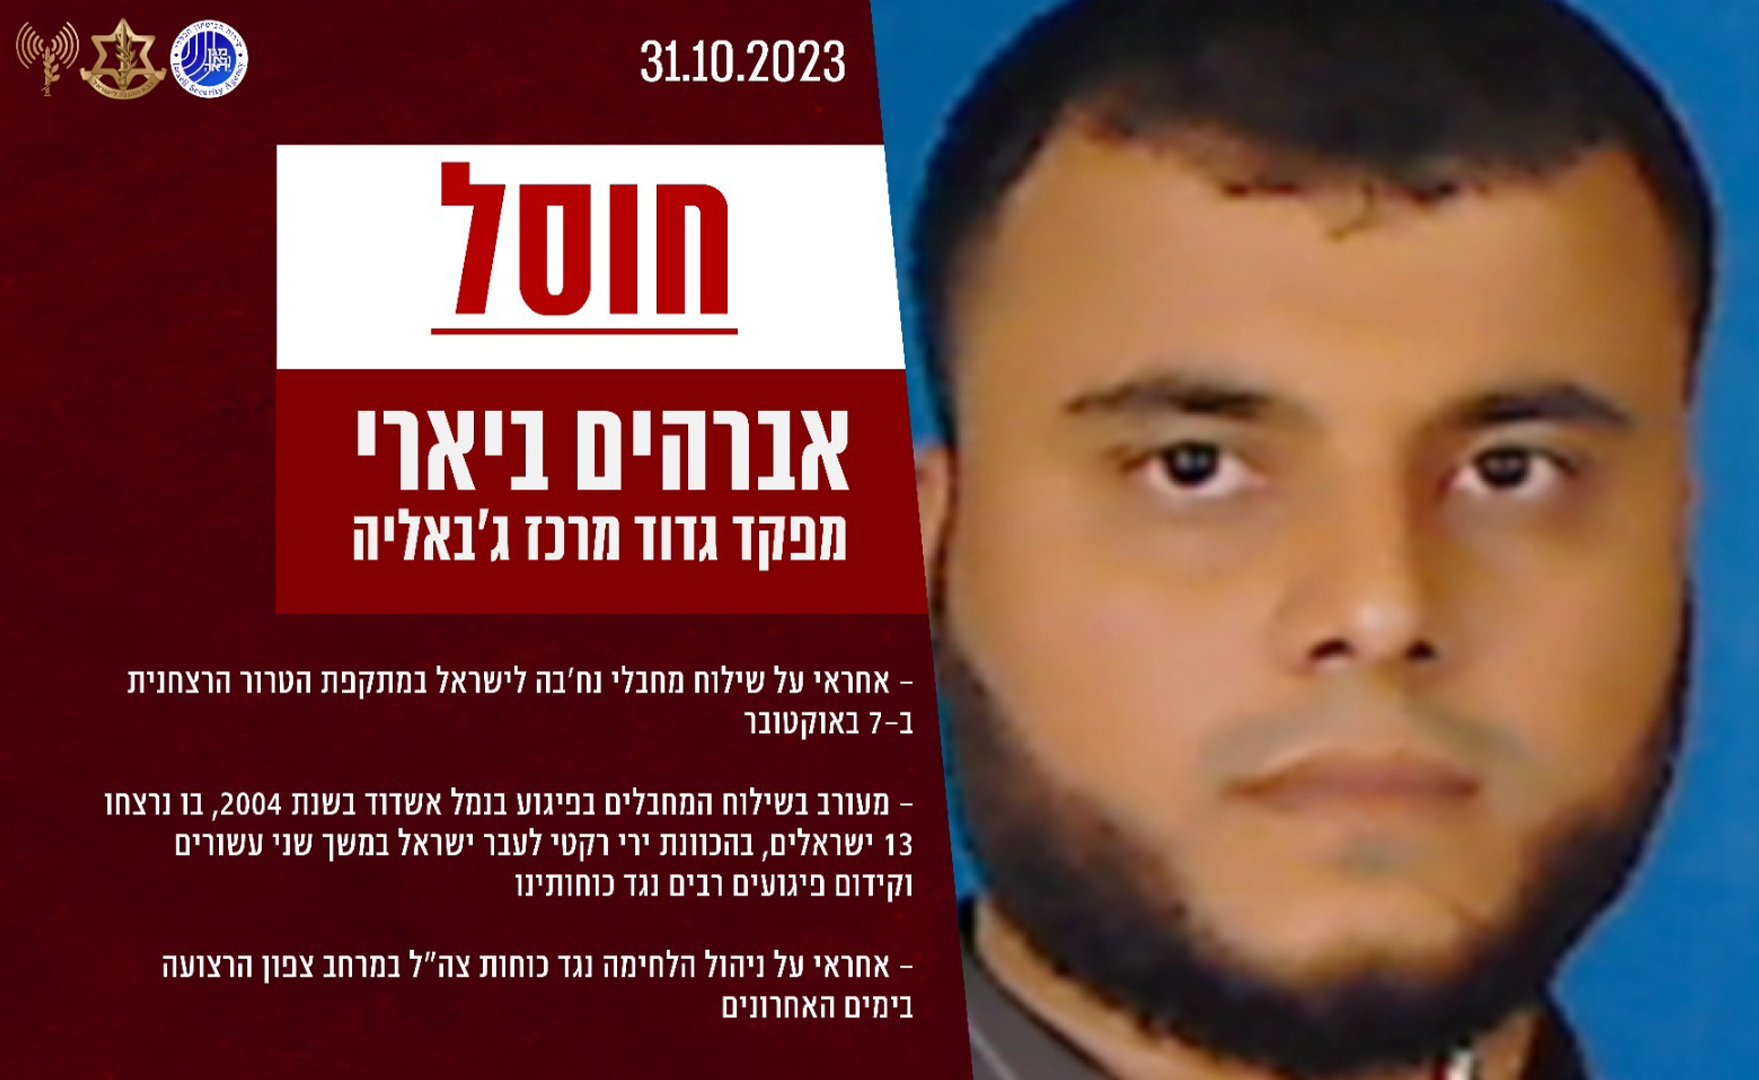 Le commandant du bataillon central Jabaliya de l'organisation terroriste Hamas a été éliminé (photo : porte-parole de Tsahal)